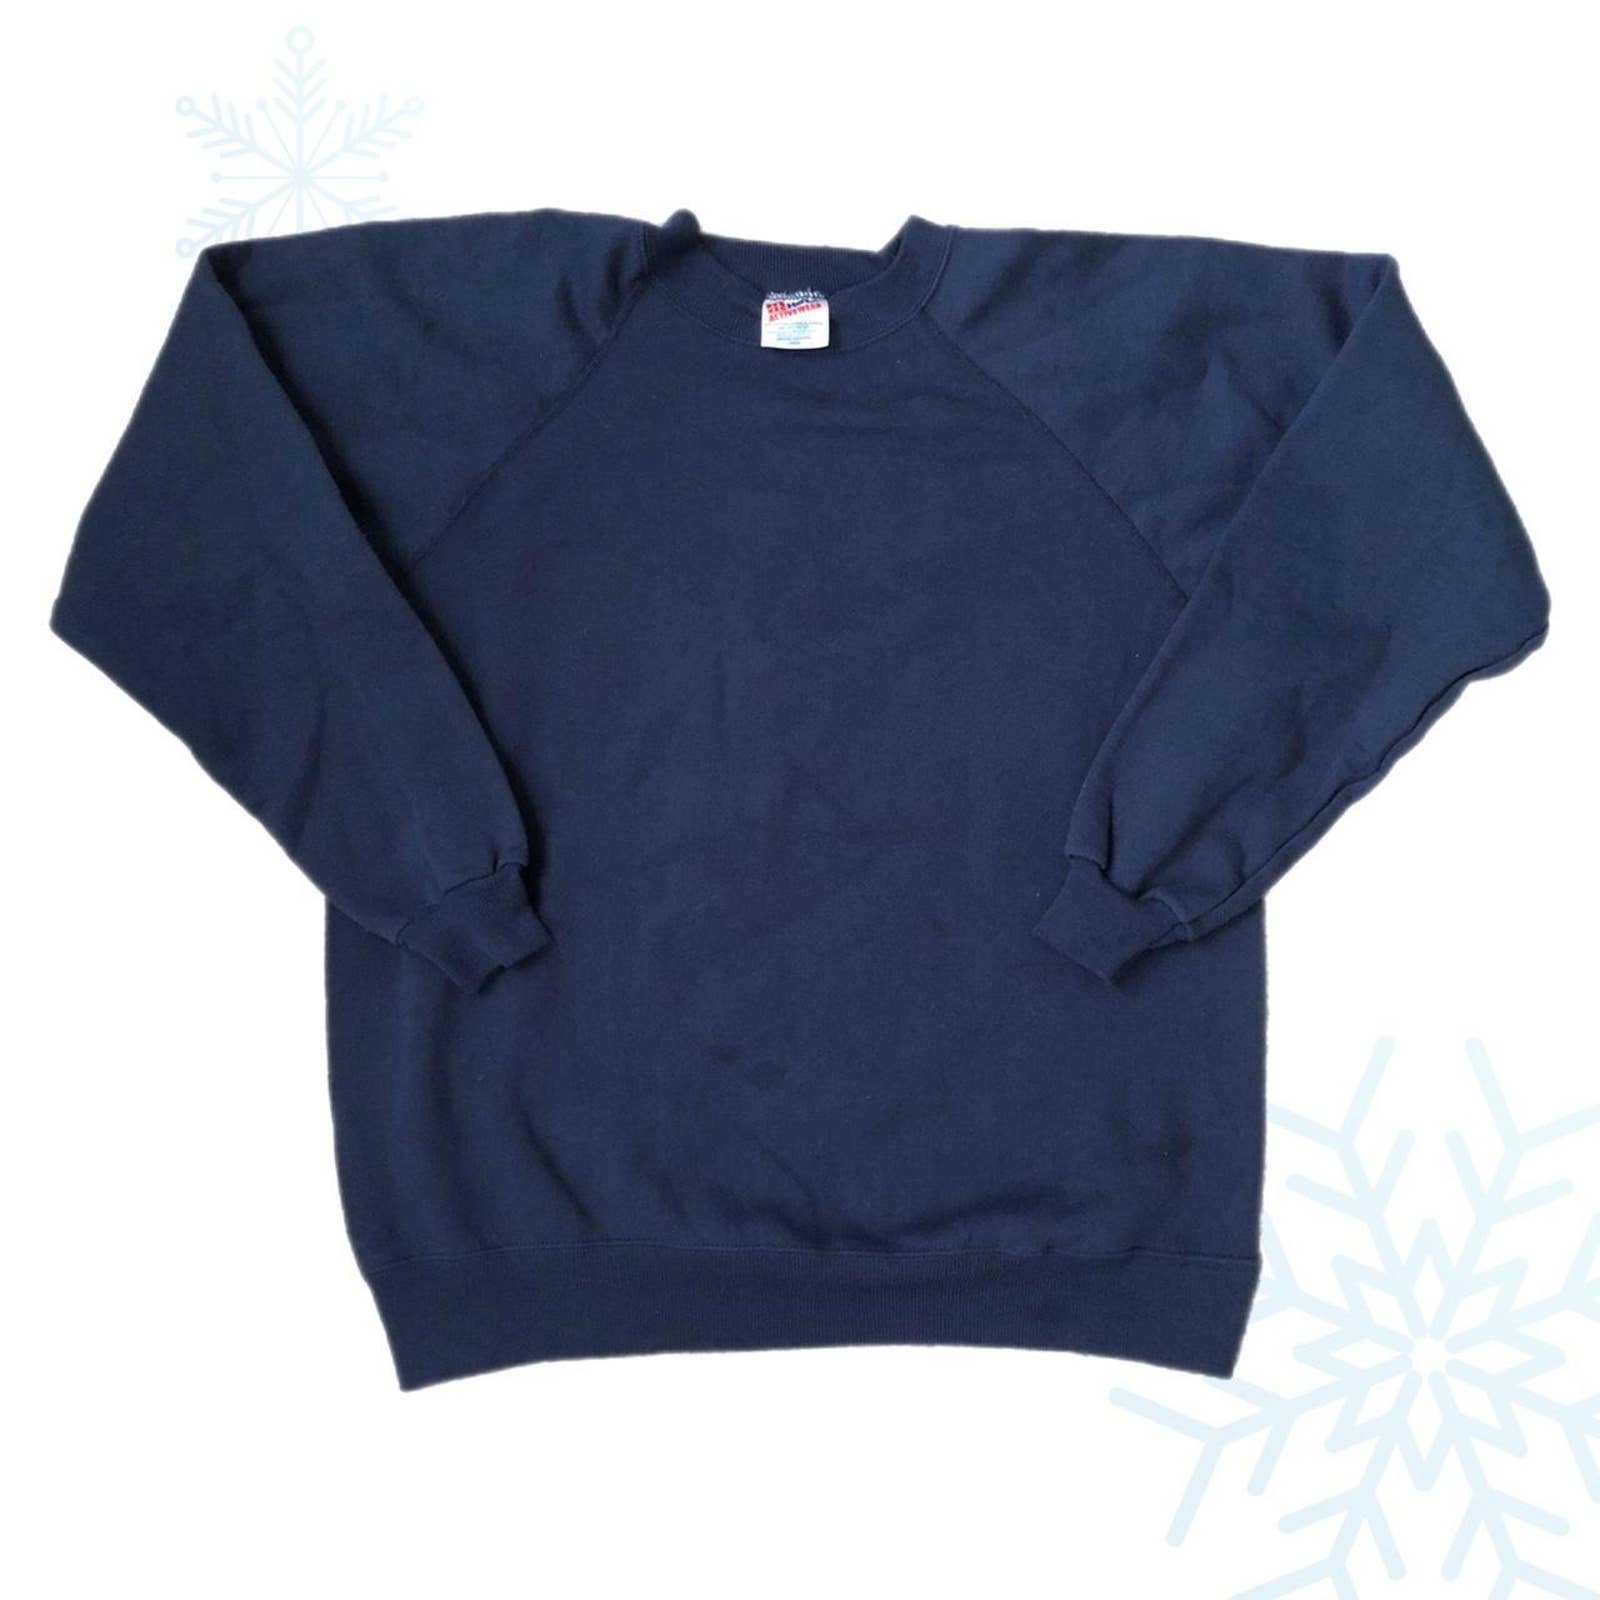 Vintage Hanes Blank Navy Crewneck Sweatshirt (L)